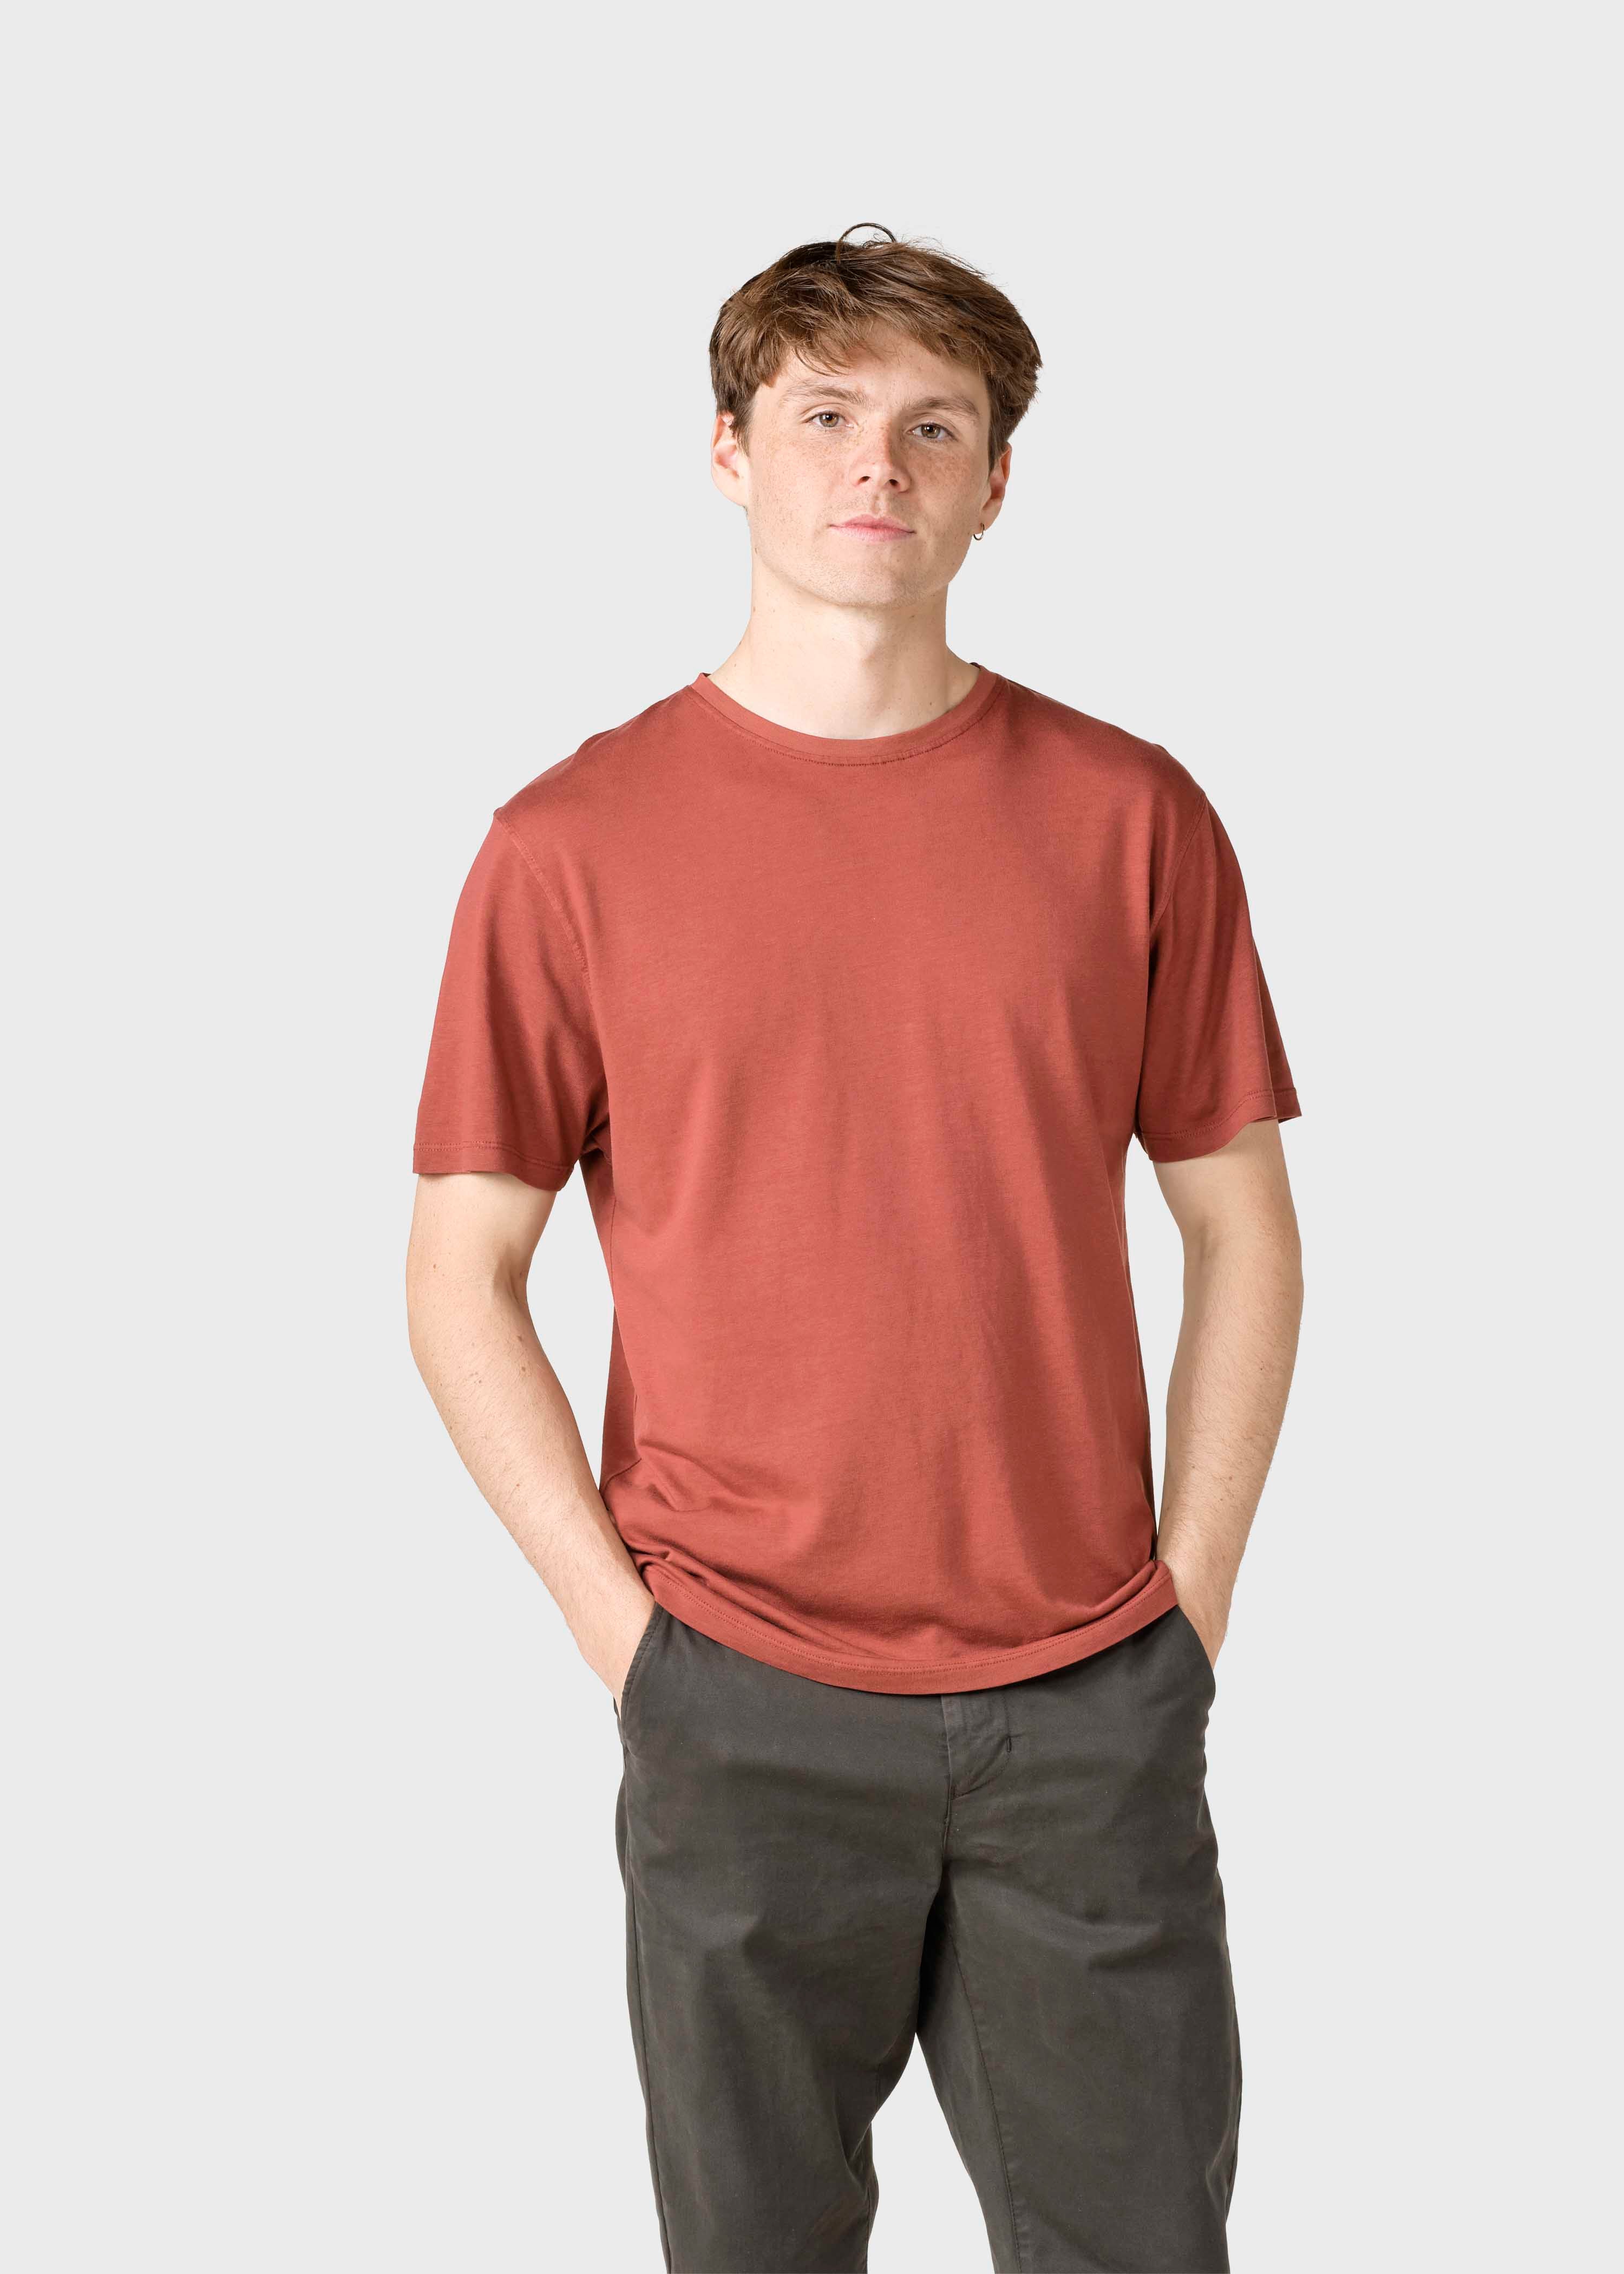 Men'sT-shirt Rufus Ocher